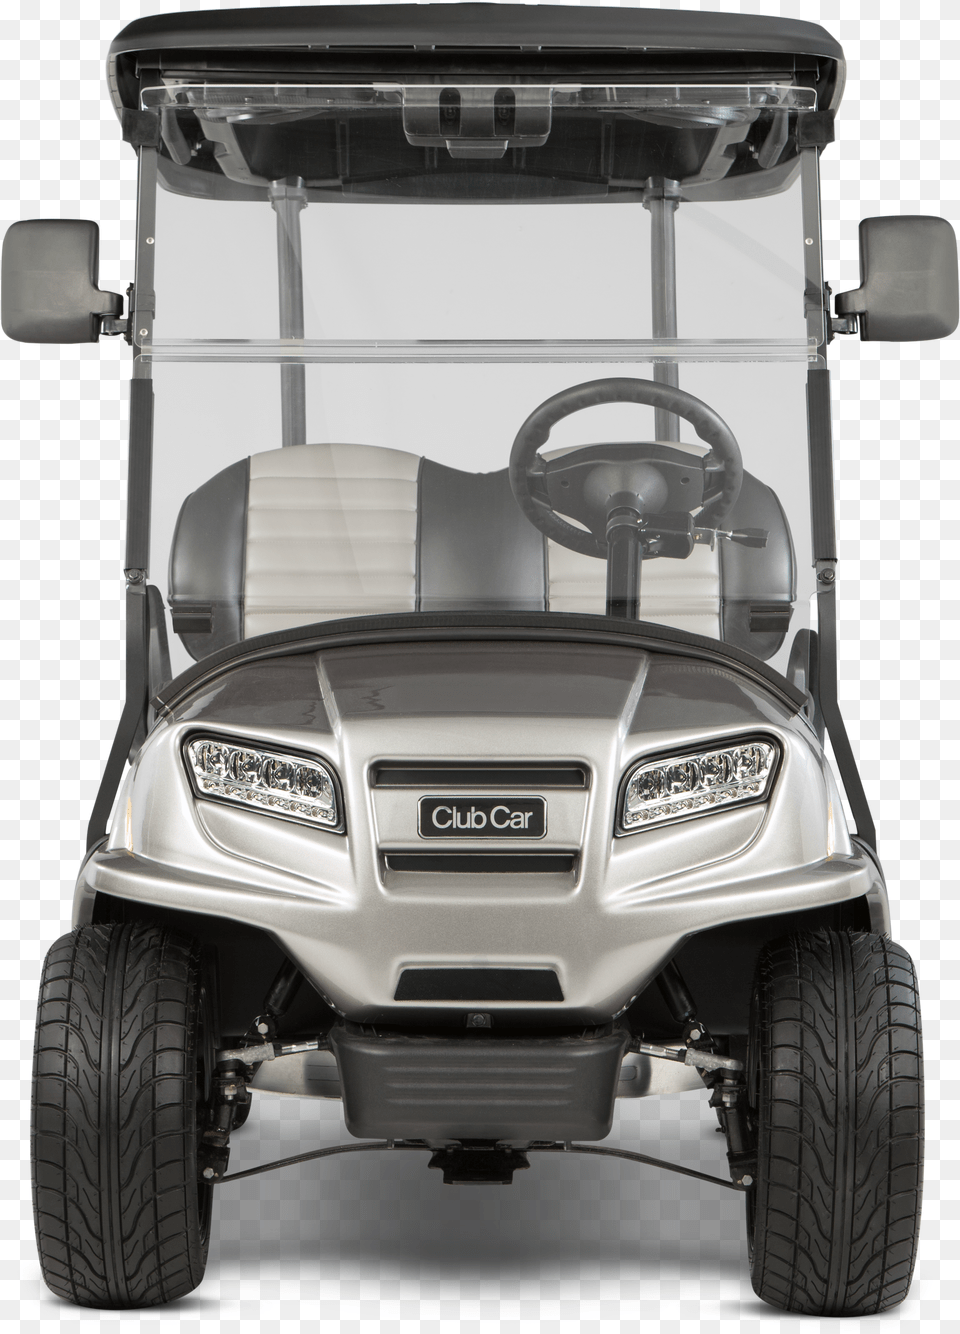 Club Car Golf Carts Golf Cart Free Transparent Png